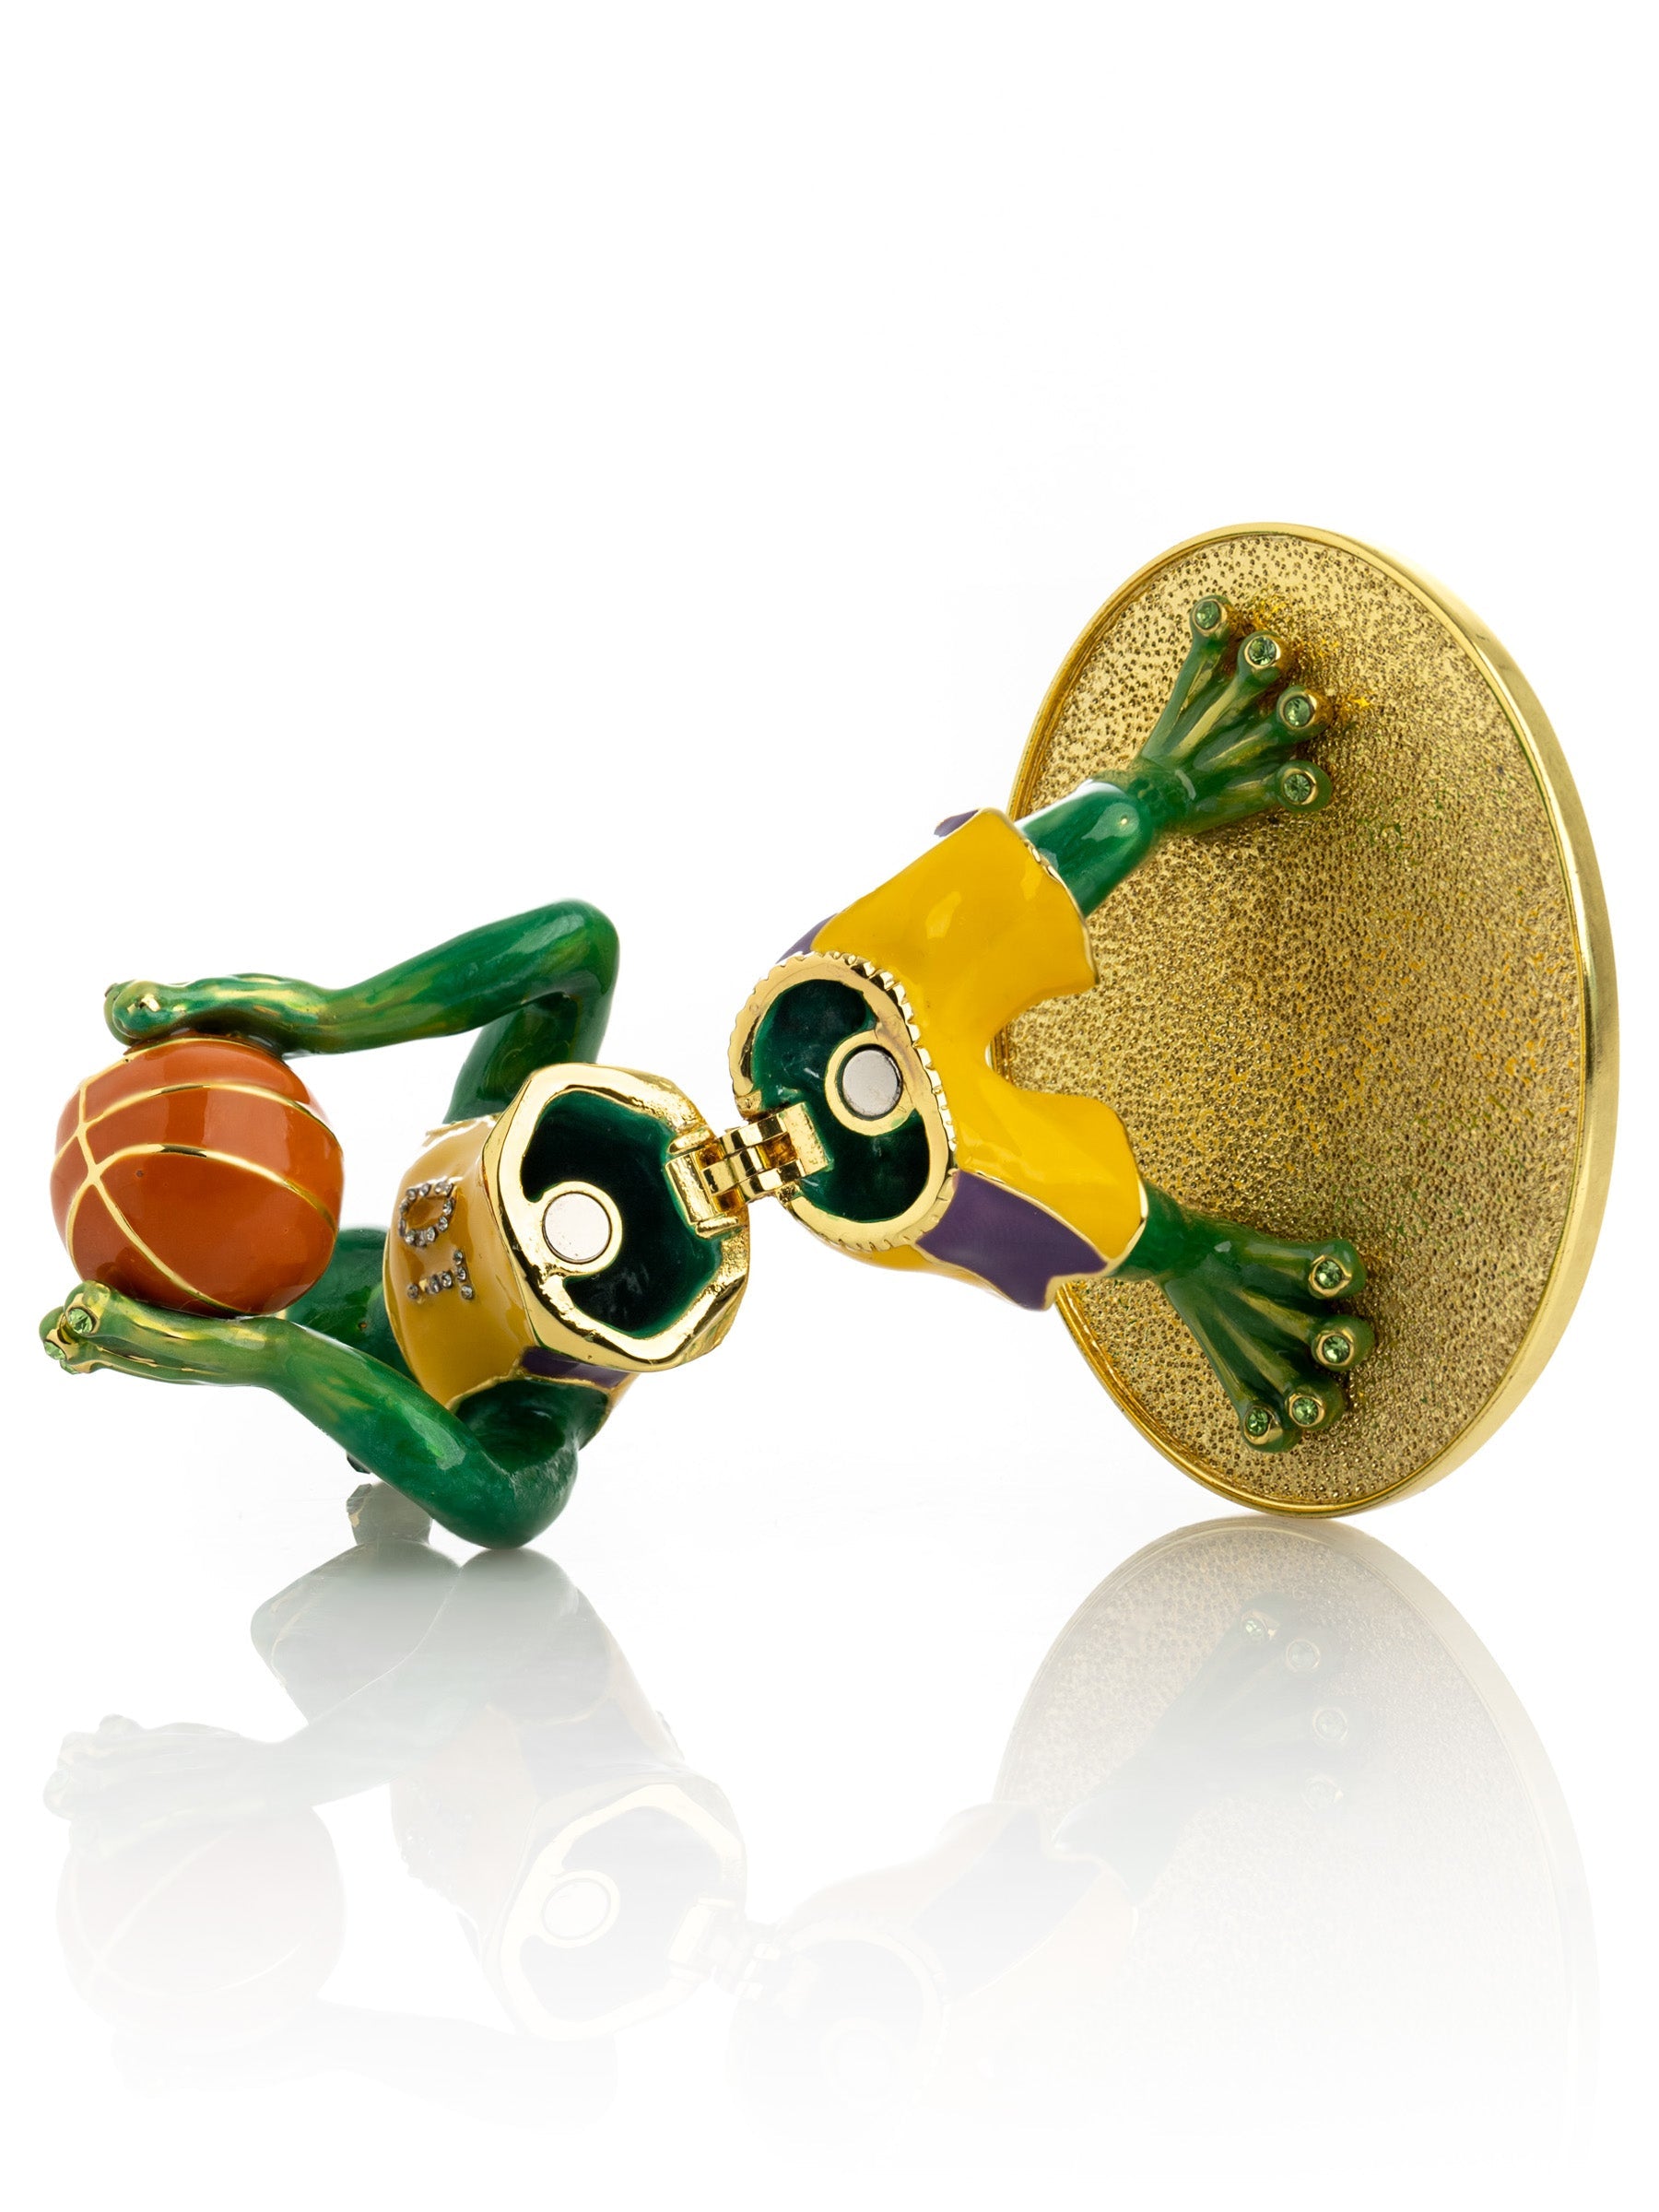 Frog Playing Basketball-7